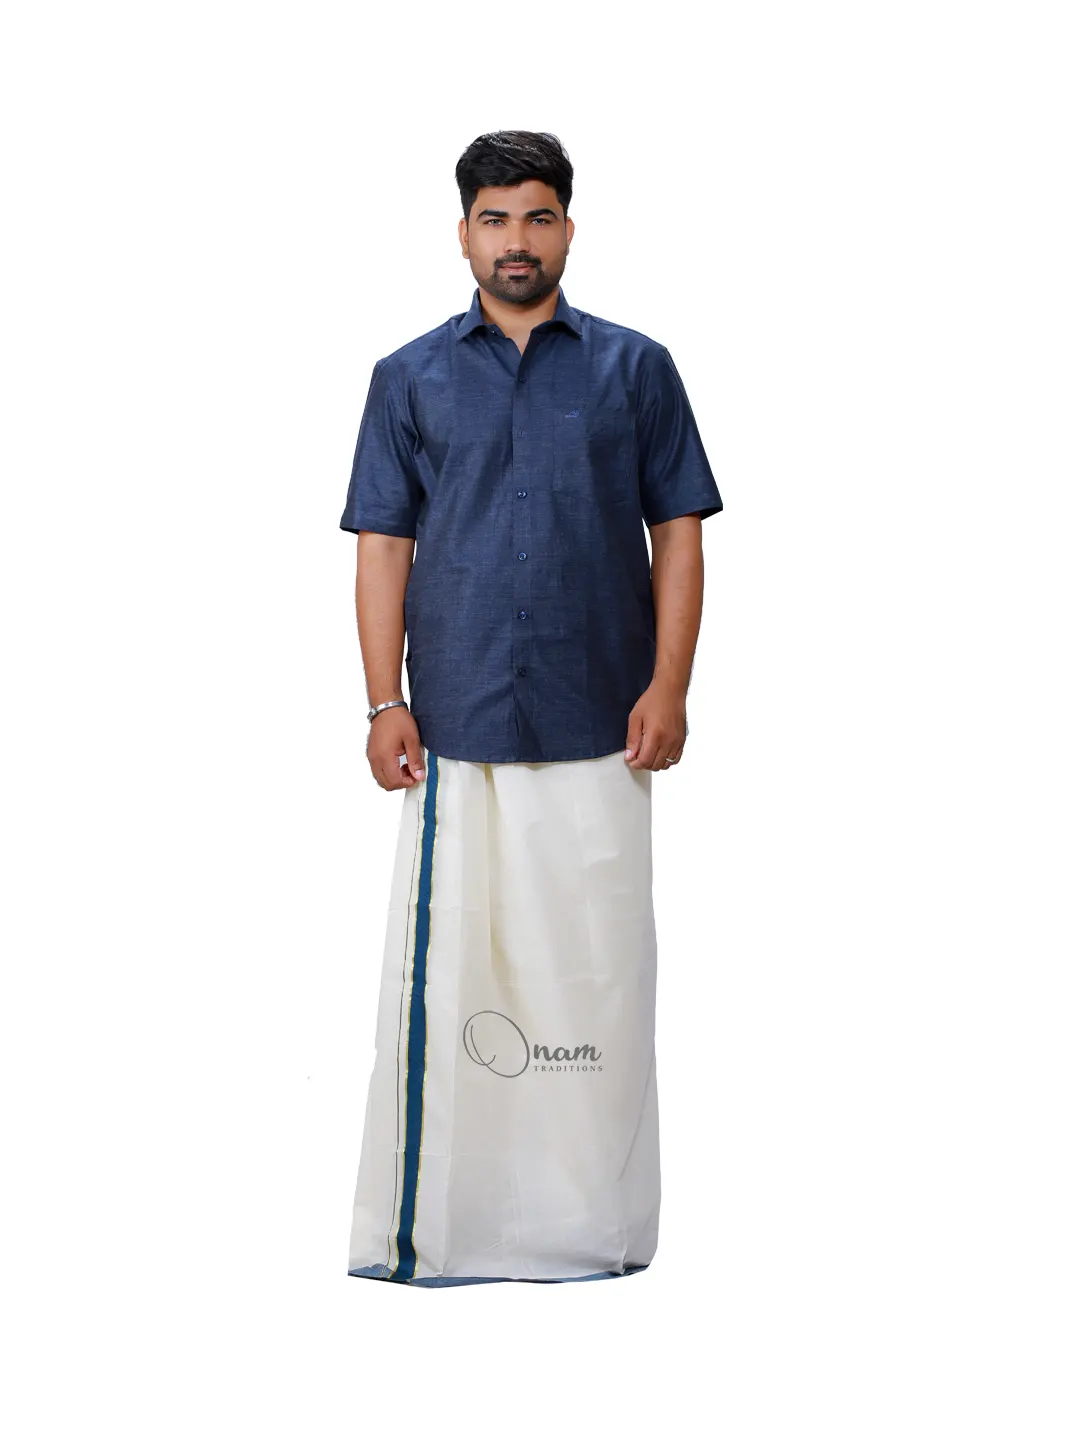 Custom designed Juba & Mundu. | Indian wedding suits men, Mundu, Veshti  sattai men tamil wedding